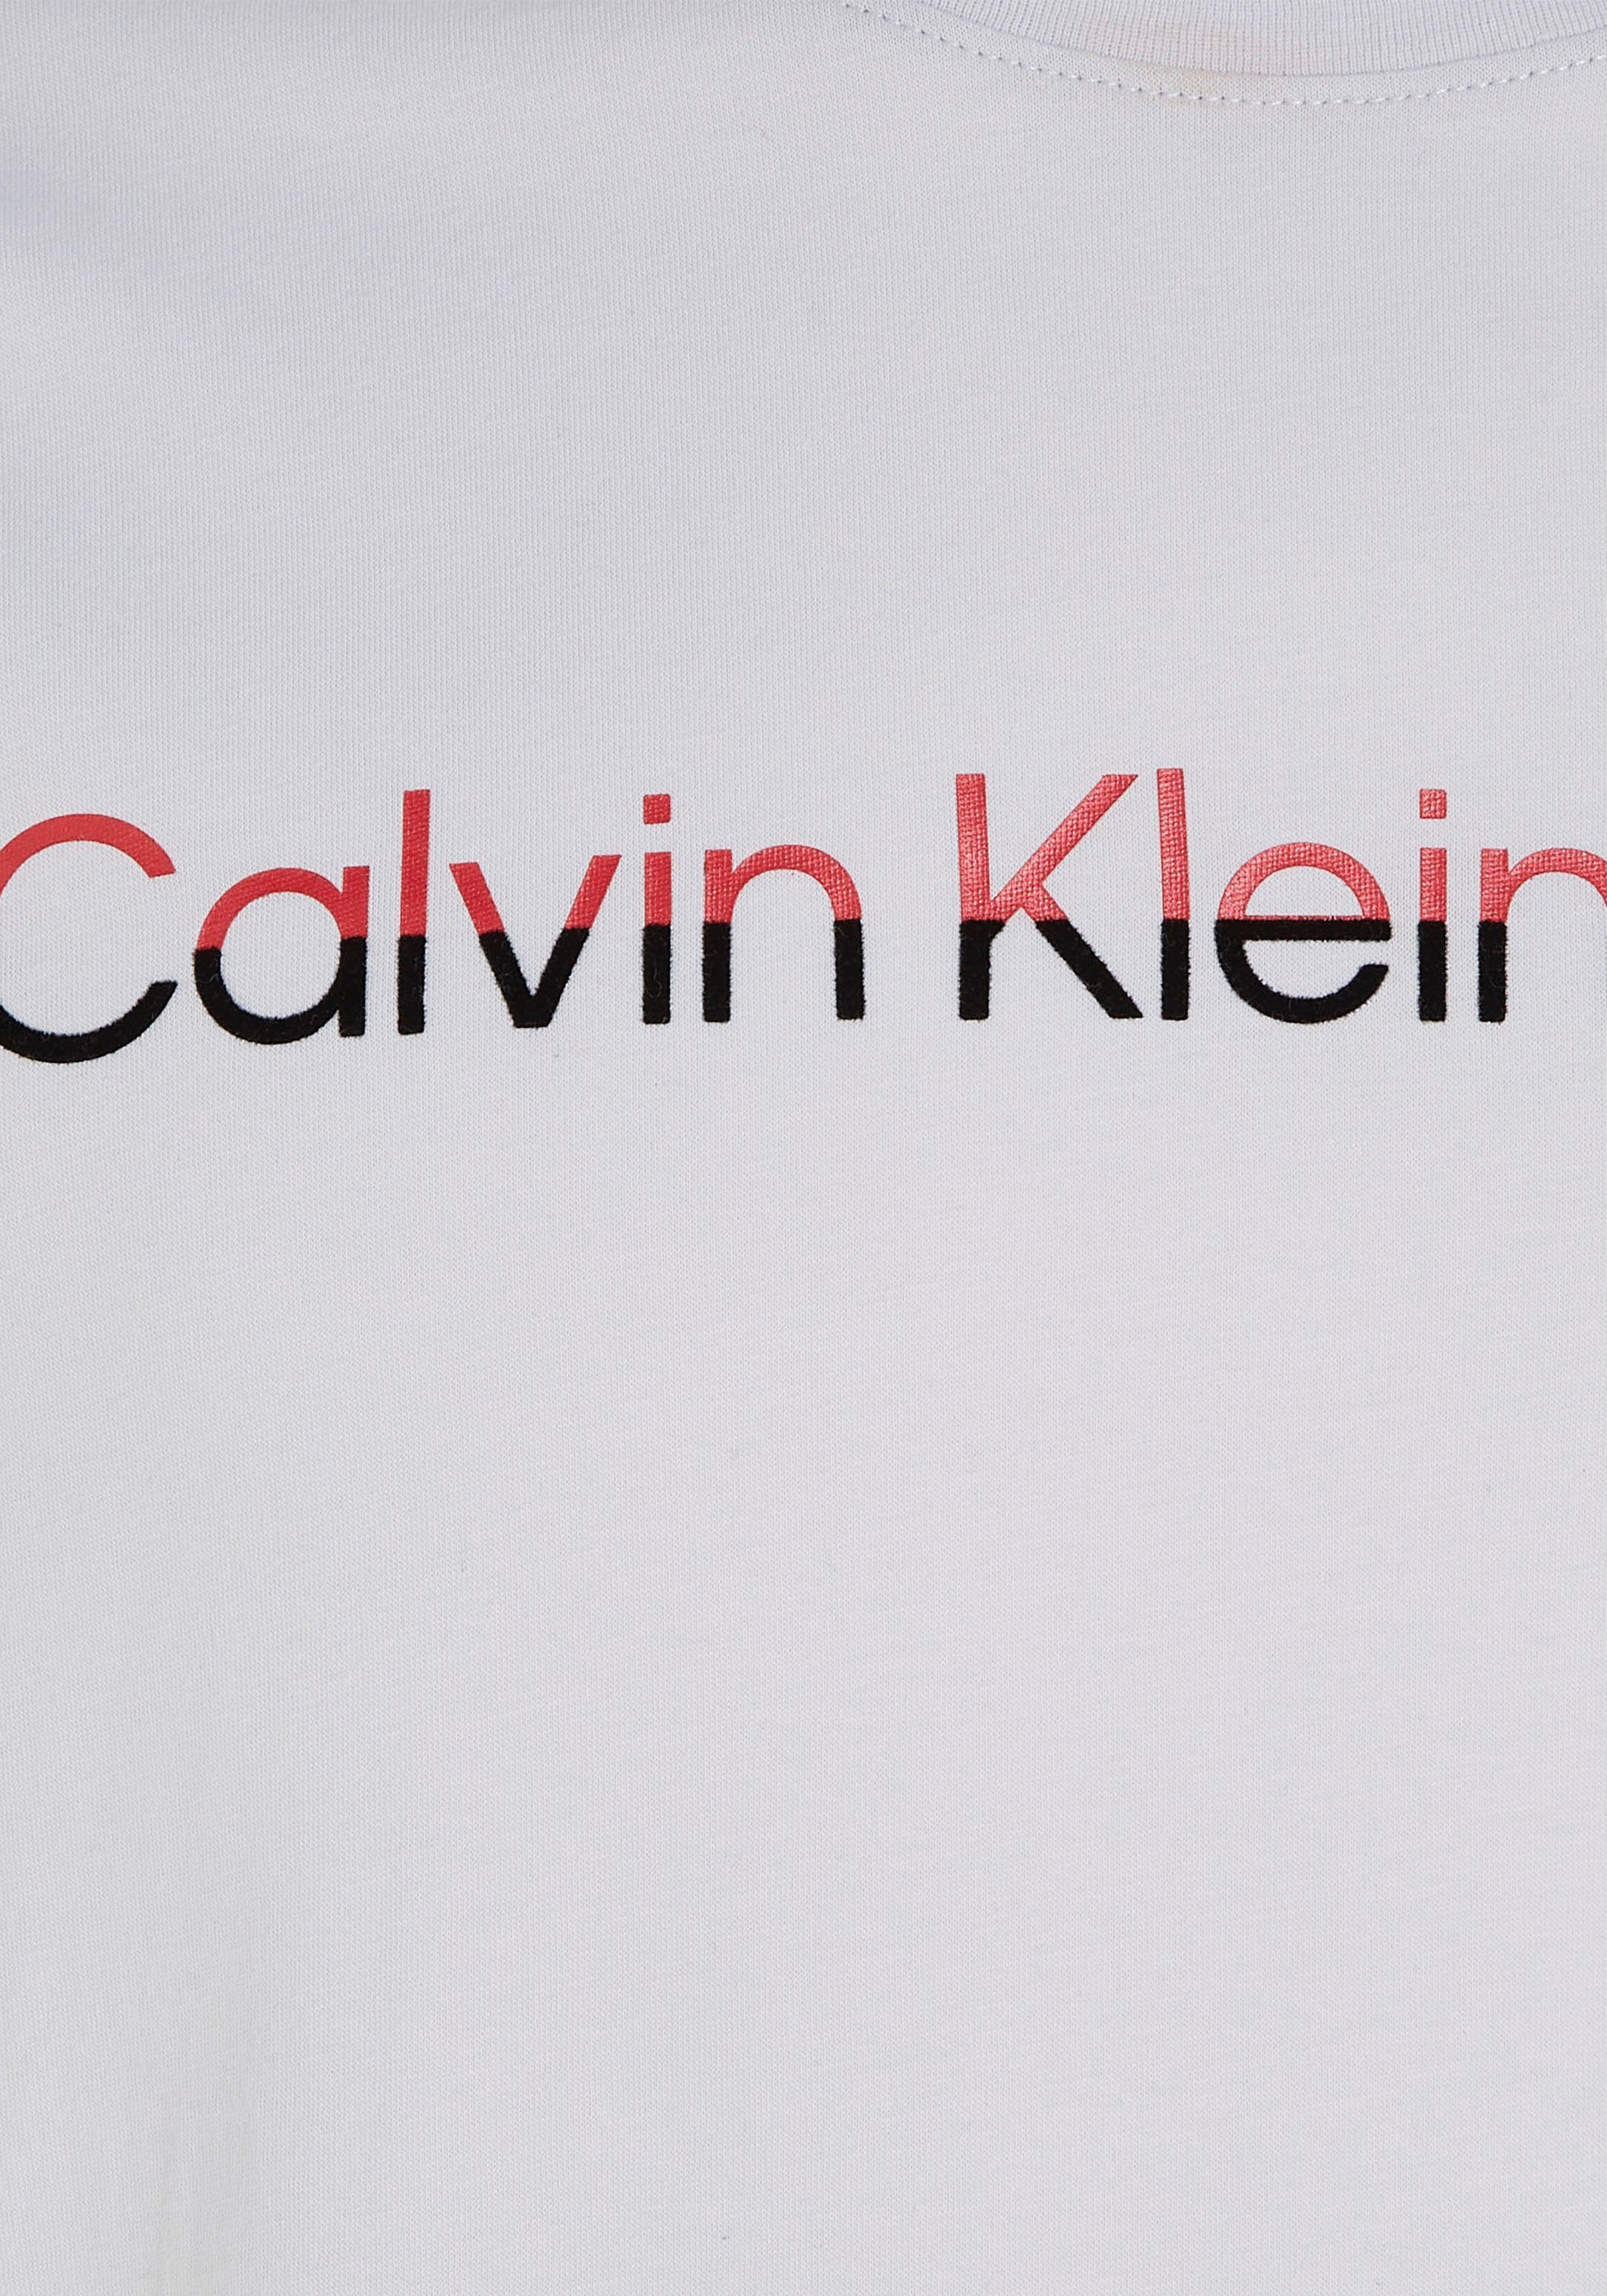 MIXED mit Calvin Klein grau Jeans INSTITUTIONA Klein Calvin T-Shirt Logoschriftzug Shirt